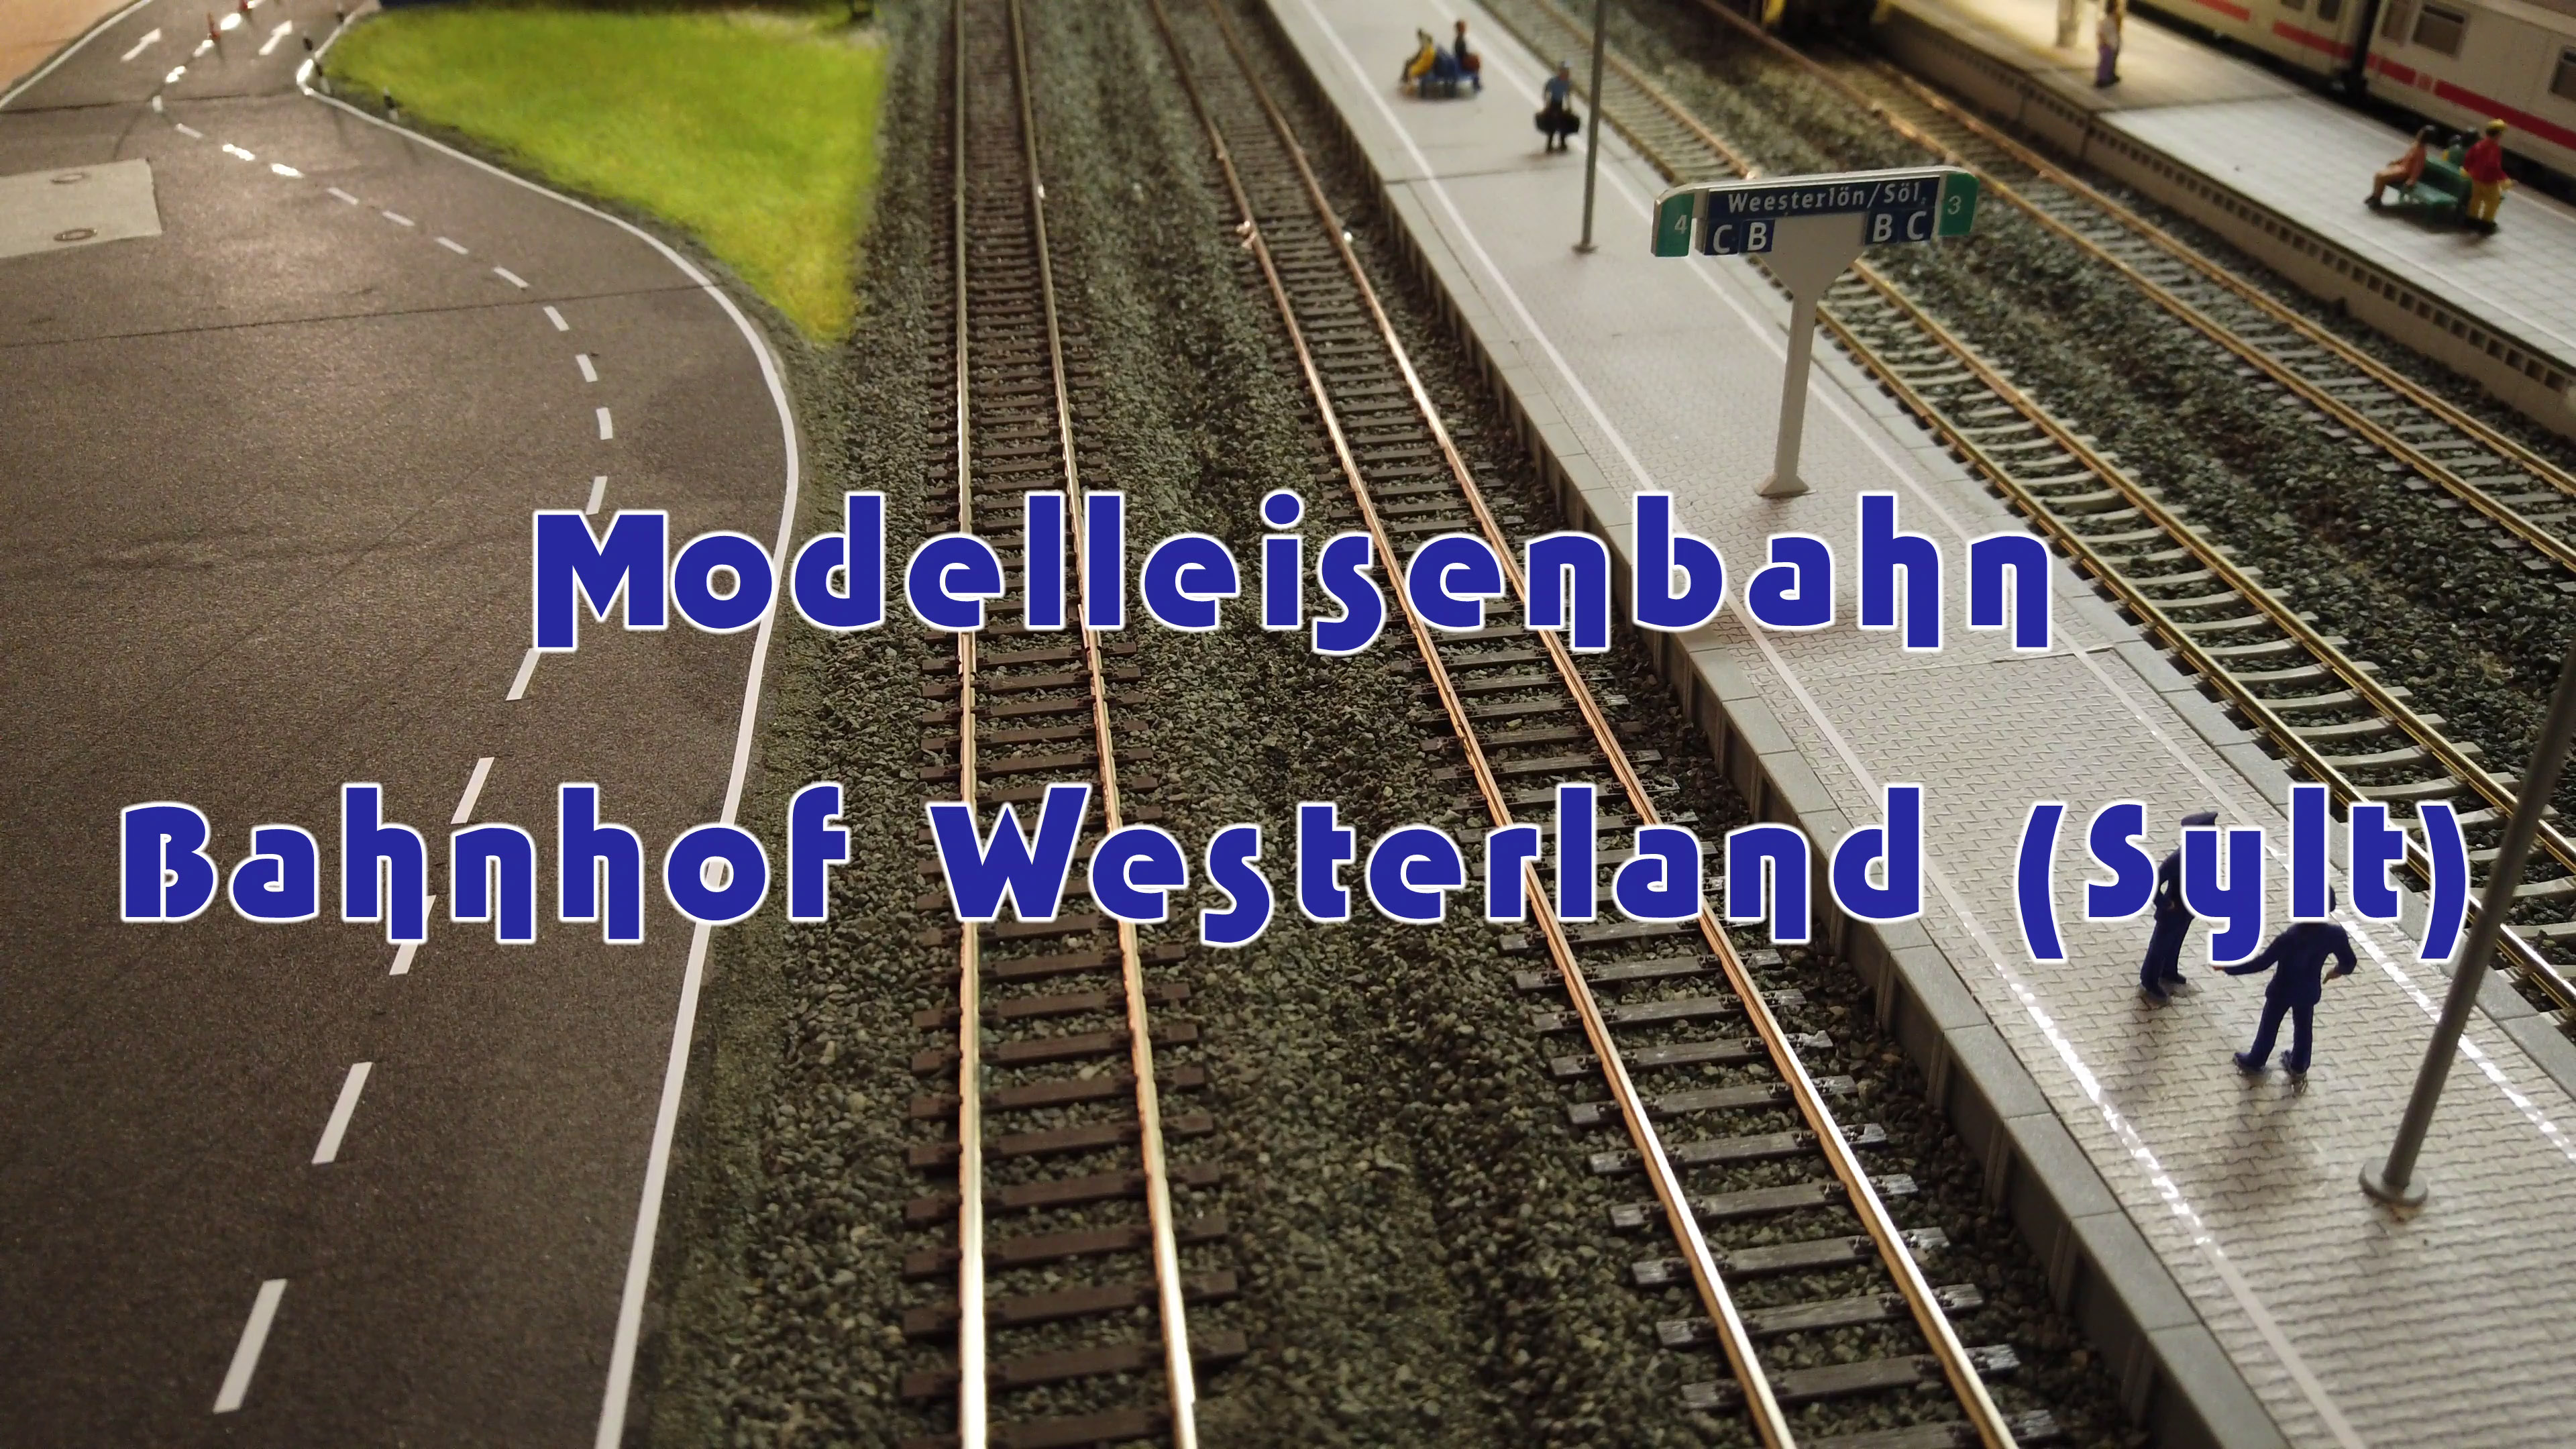 Einmalig und sensationell: Modelleisenbahn Bahnhof Westerland auf Sylt in Spur H0